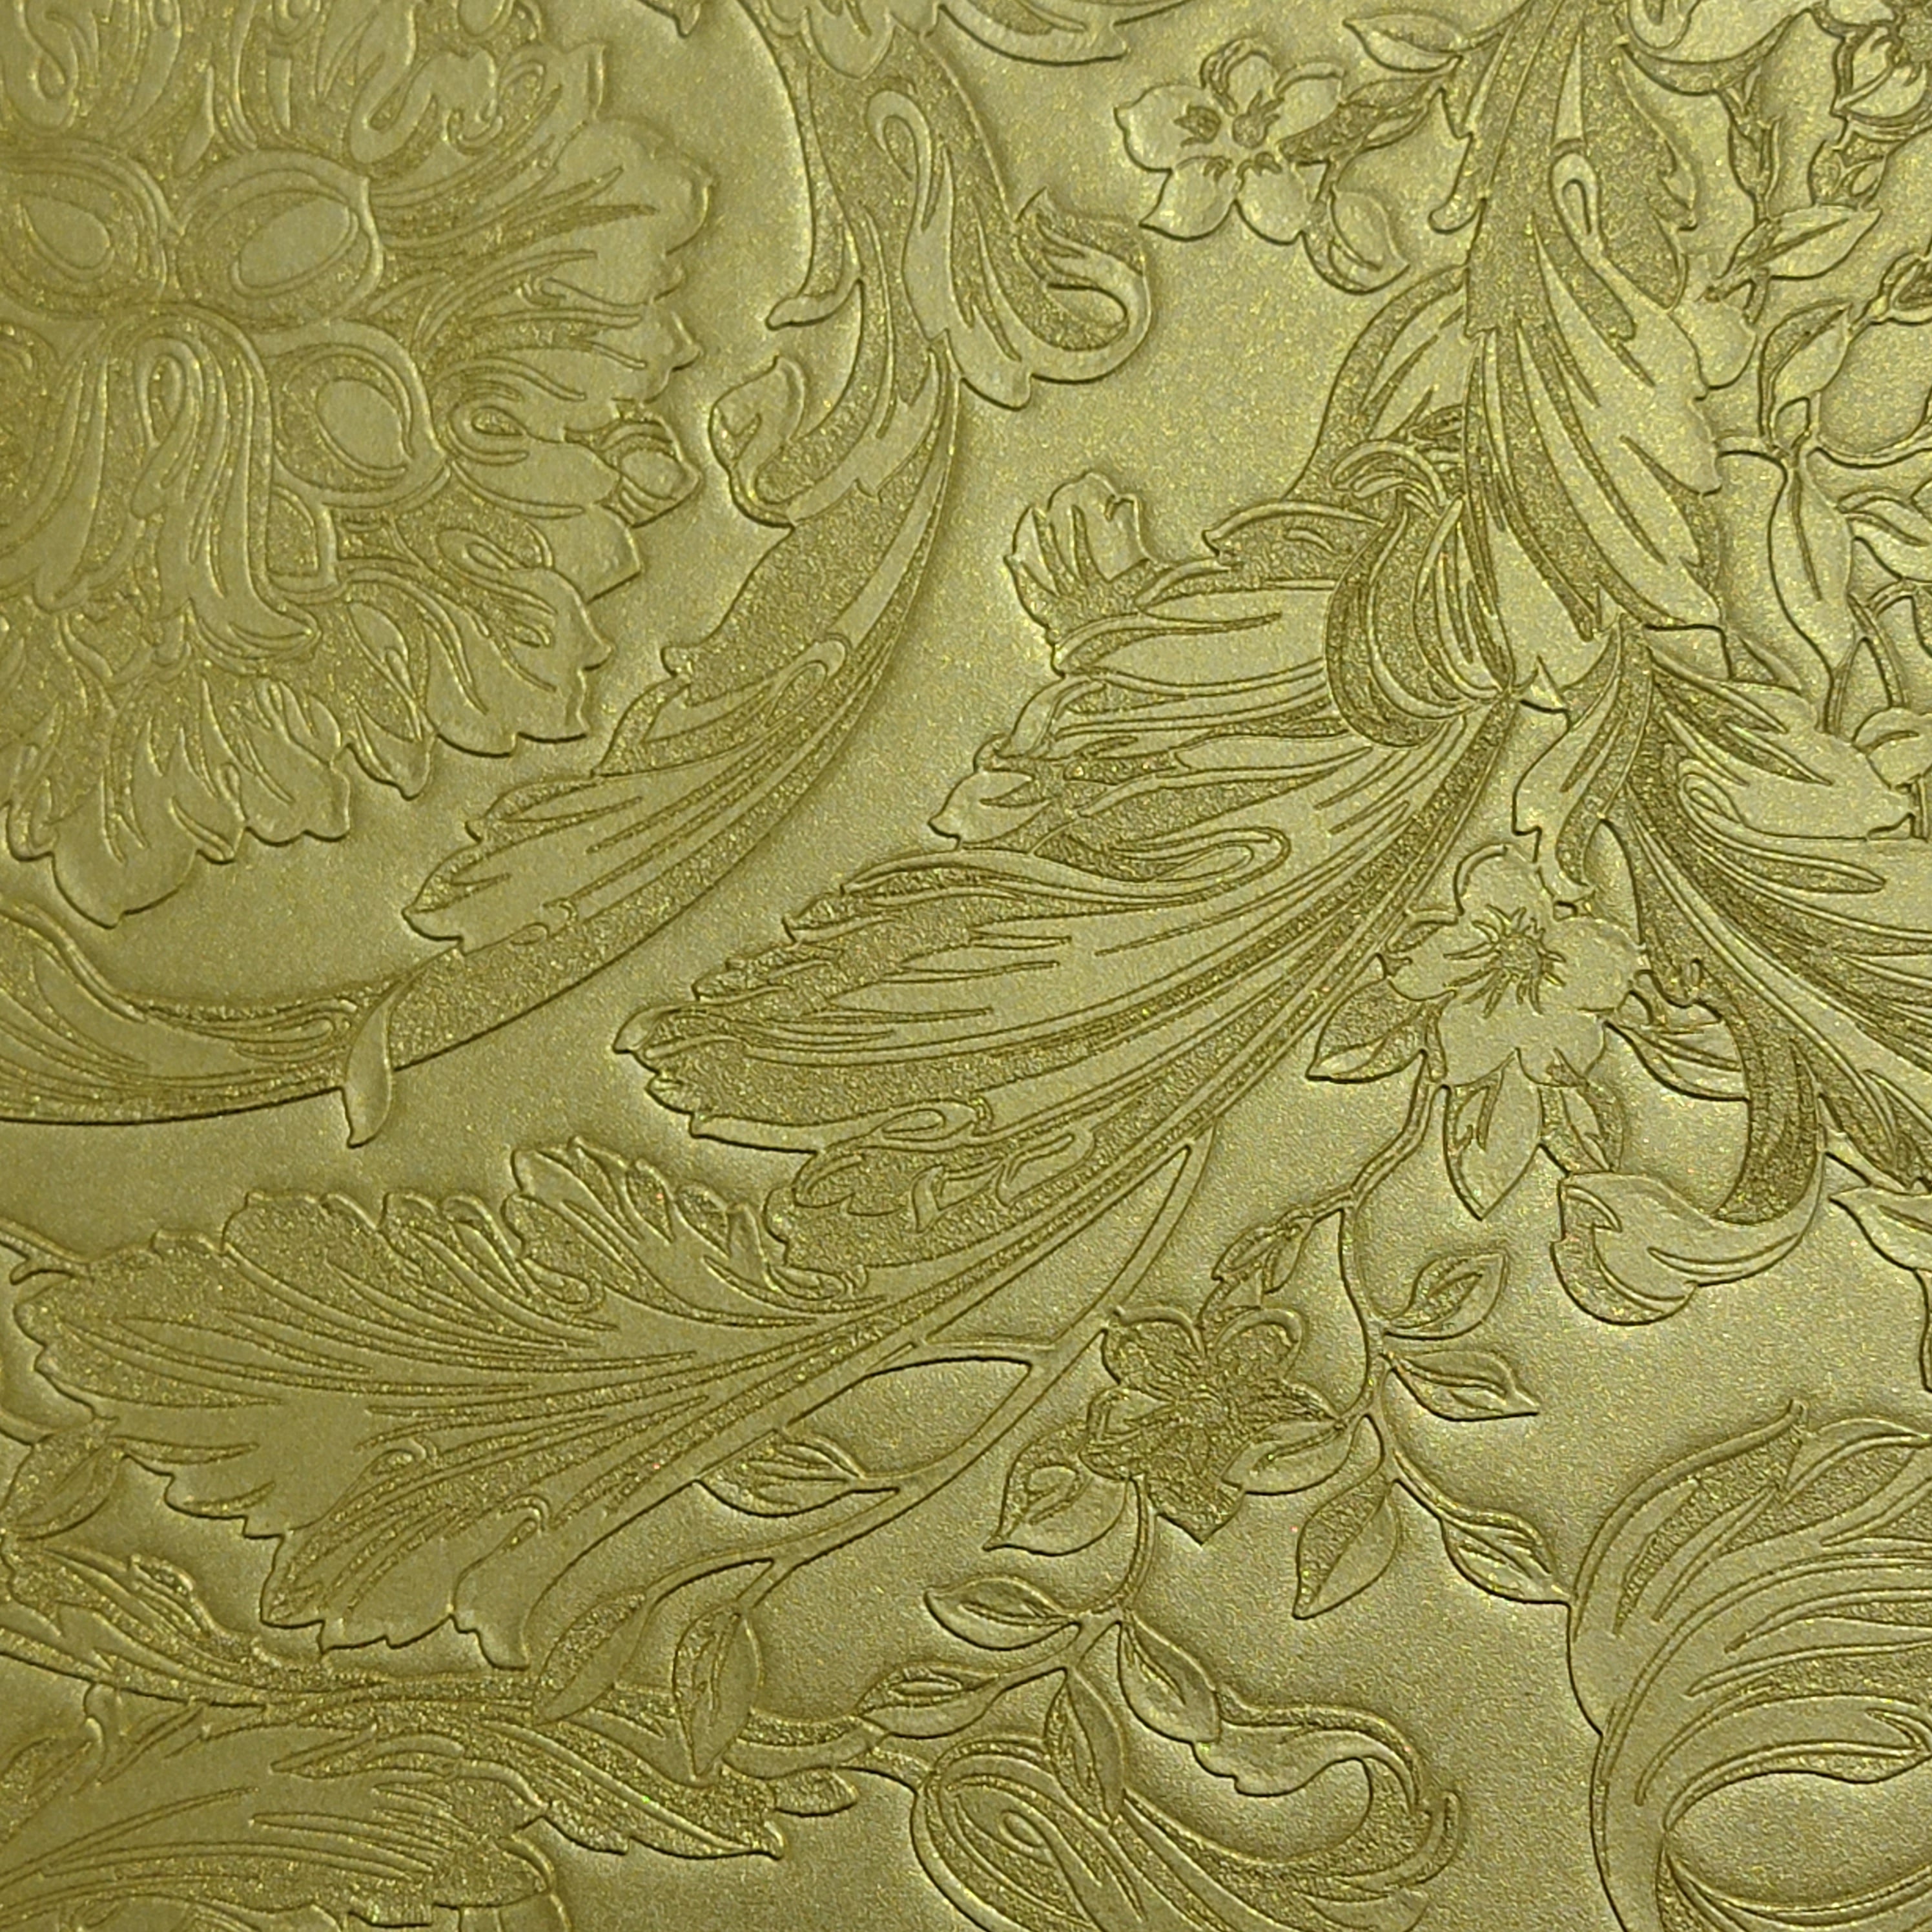 Gold Versace Gloves – Legendary Wall Art